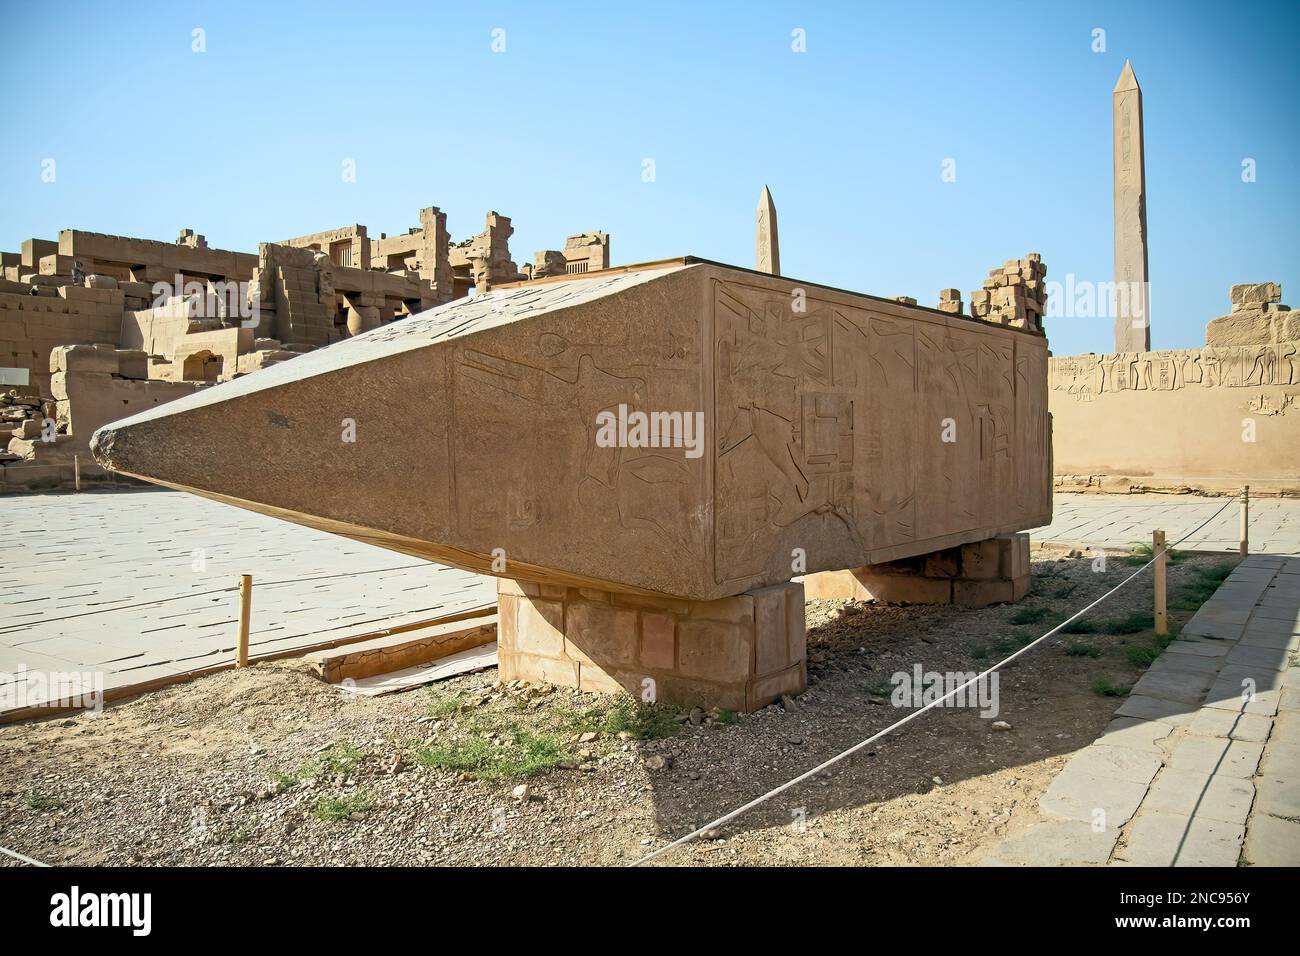 Luxor, Egitto. Il complesso del Tempio di Karnak, comunemente noto come Karnak, comprende un vasto mix di templi decadenti. 26th marzo 2013. Foto Stock